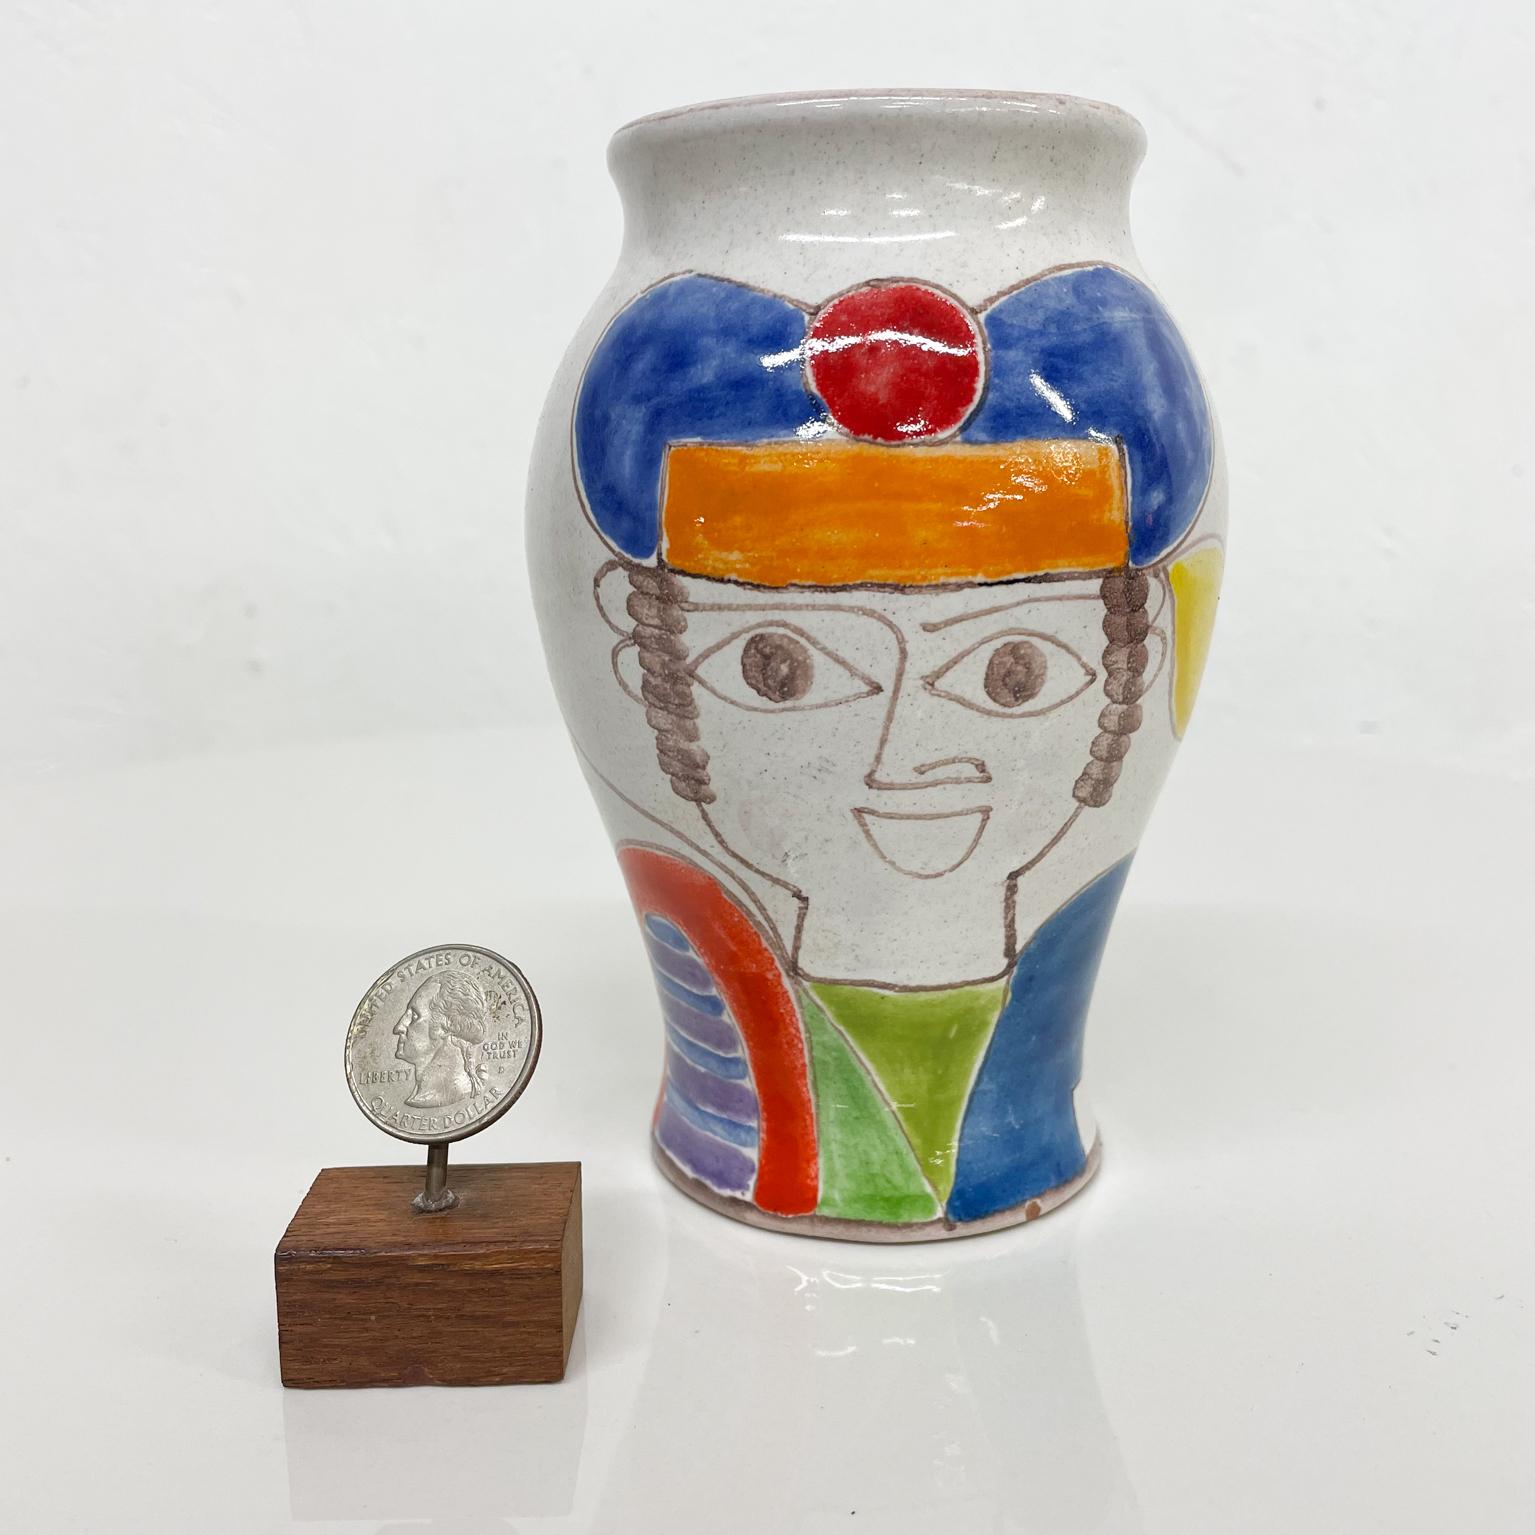 Vase aus italienischer Keramik.
aus Italien DeSimone handbemalte Vase aus Keramik.
Giovanni De Simone Italienische bunte Vase 1960er Jahre Italien.
Maße: 5,63 hoch x 3,75 Durchmesser
Gebrauchtes Original unrestauriert guter